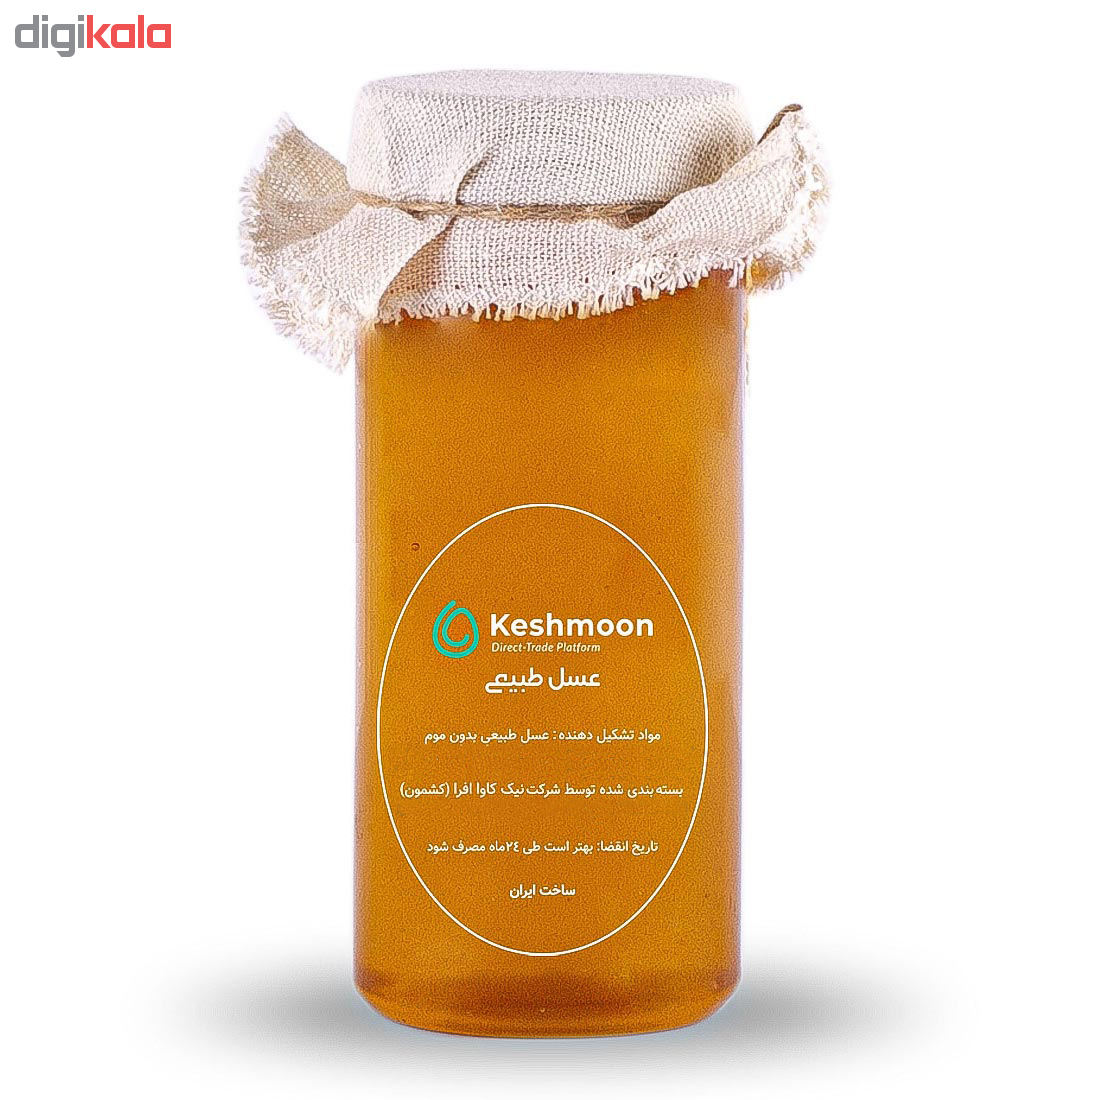 مشخصات و لیست قیمت عسل دشت کشمون علیرضا حیدری- ۹۰۰ گرم